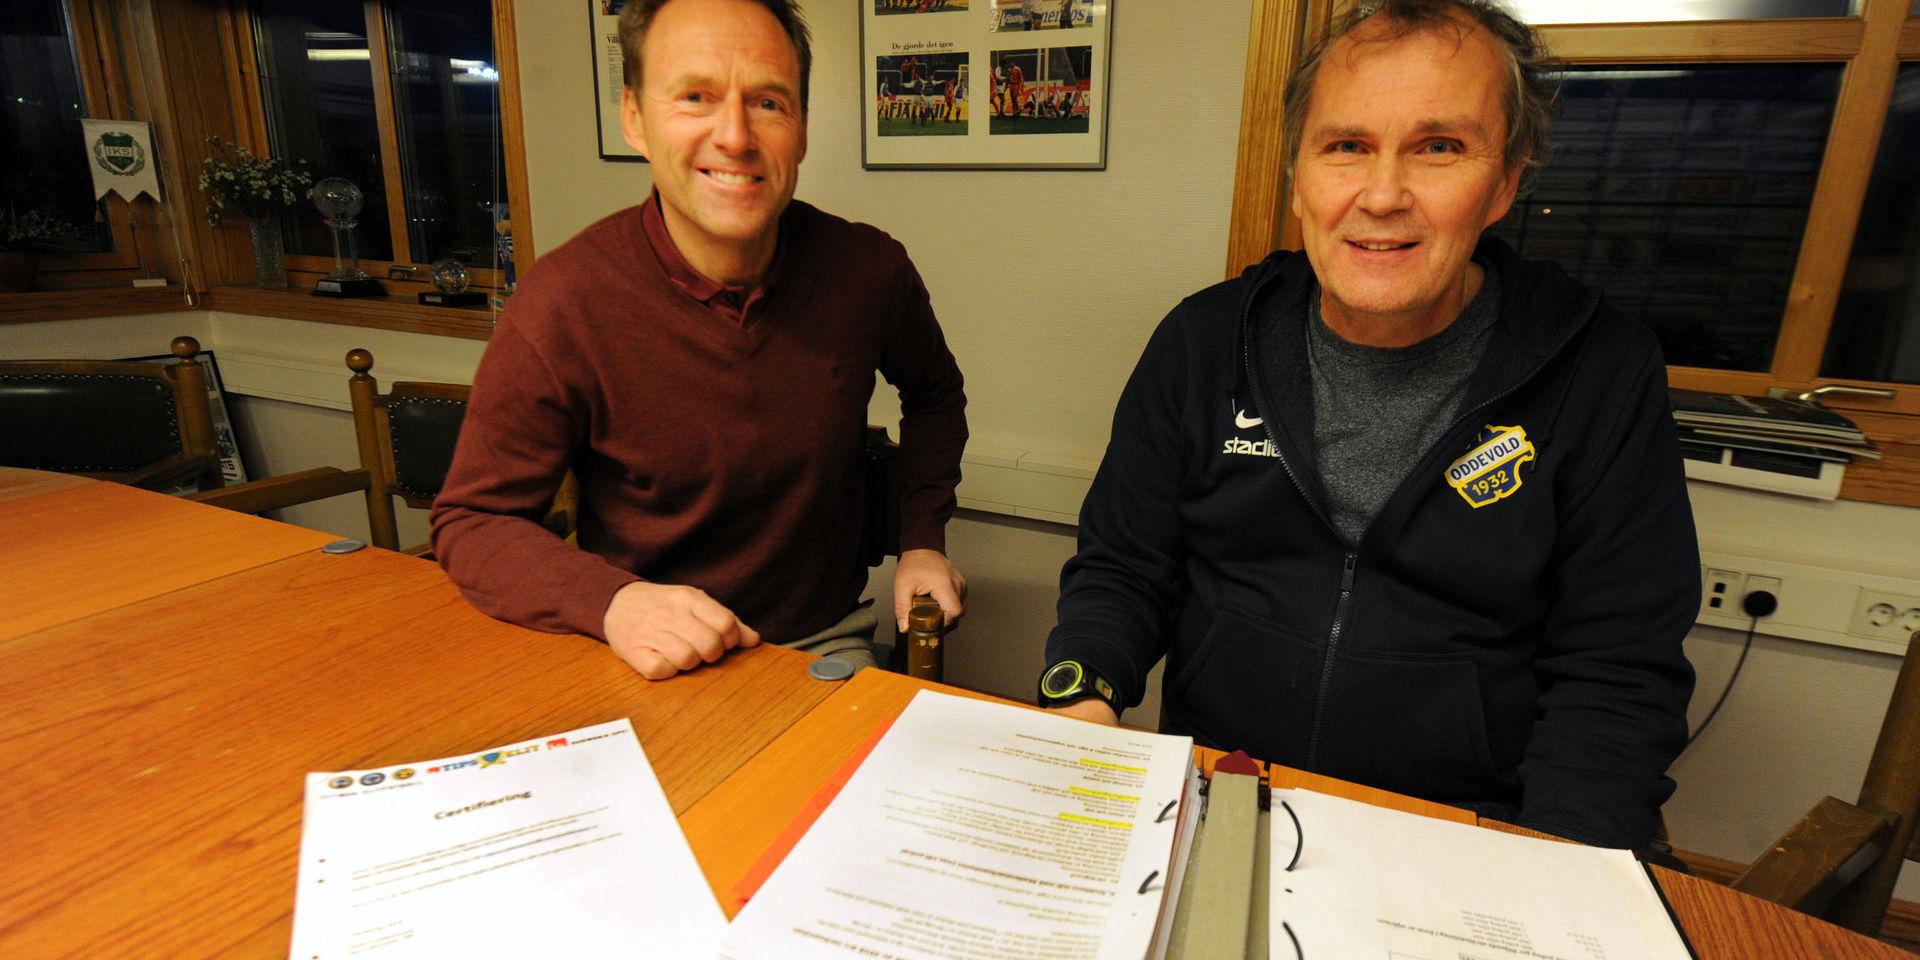 Oddevolds Johan Brinck och Leif Lindvärn har jobbat med kontakterna med Svensk elitfotboll under ungdomsakademins certifiering.